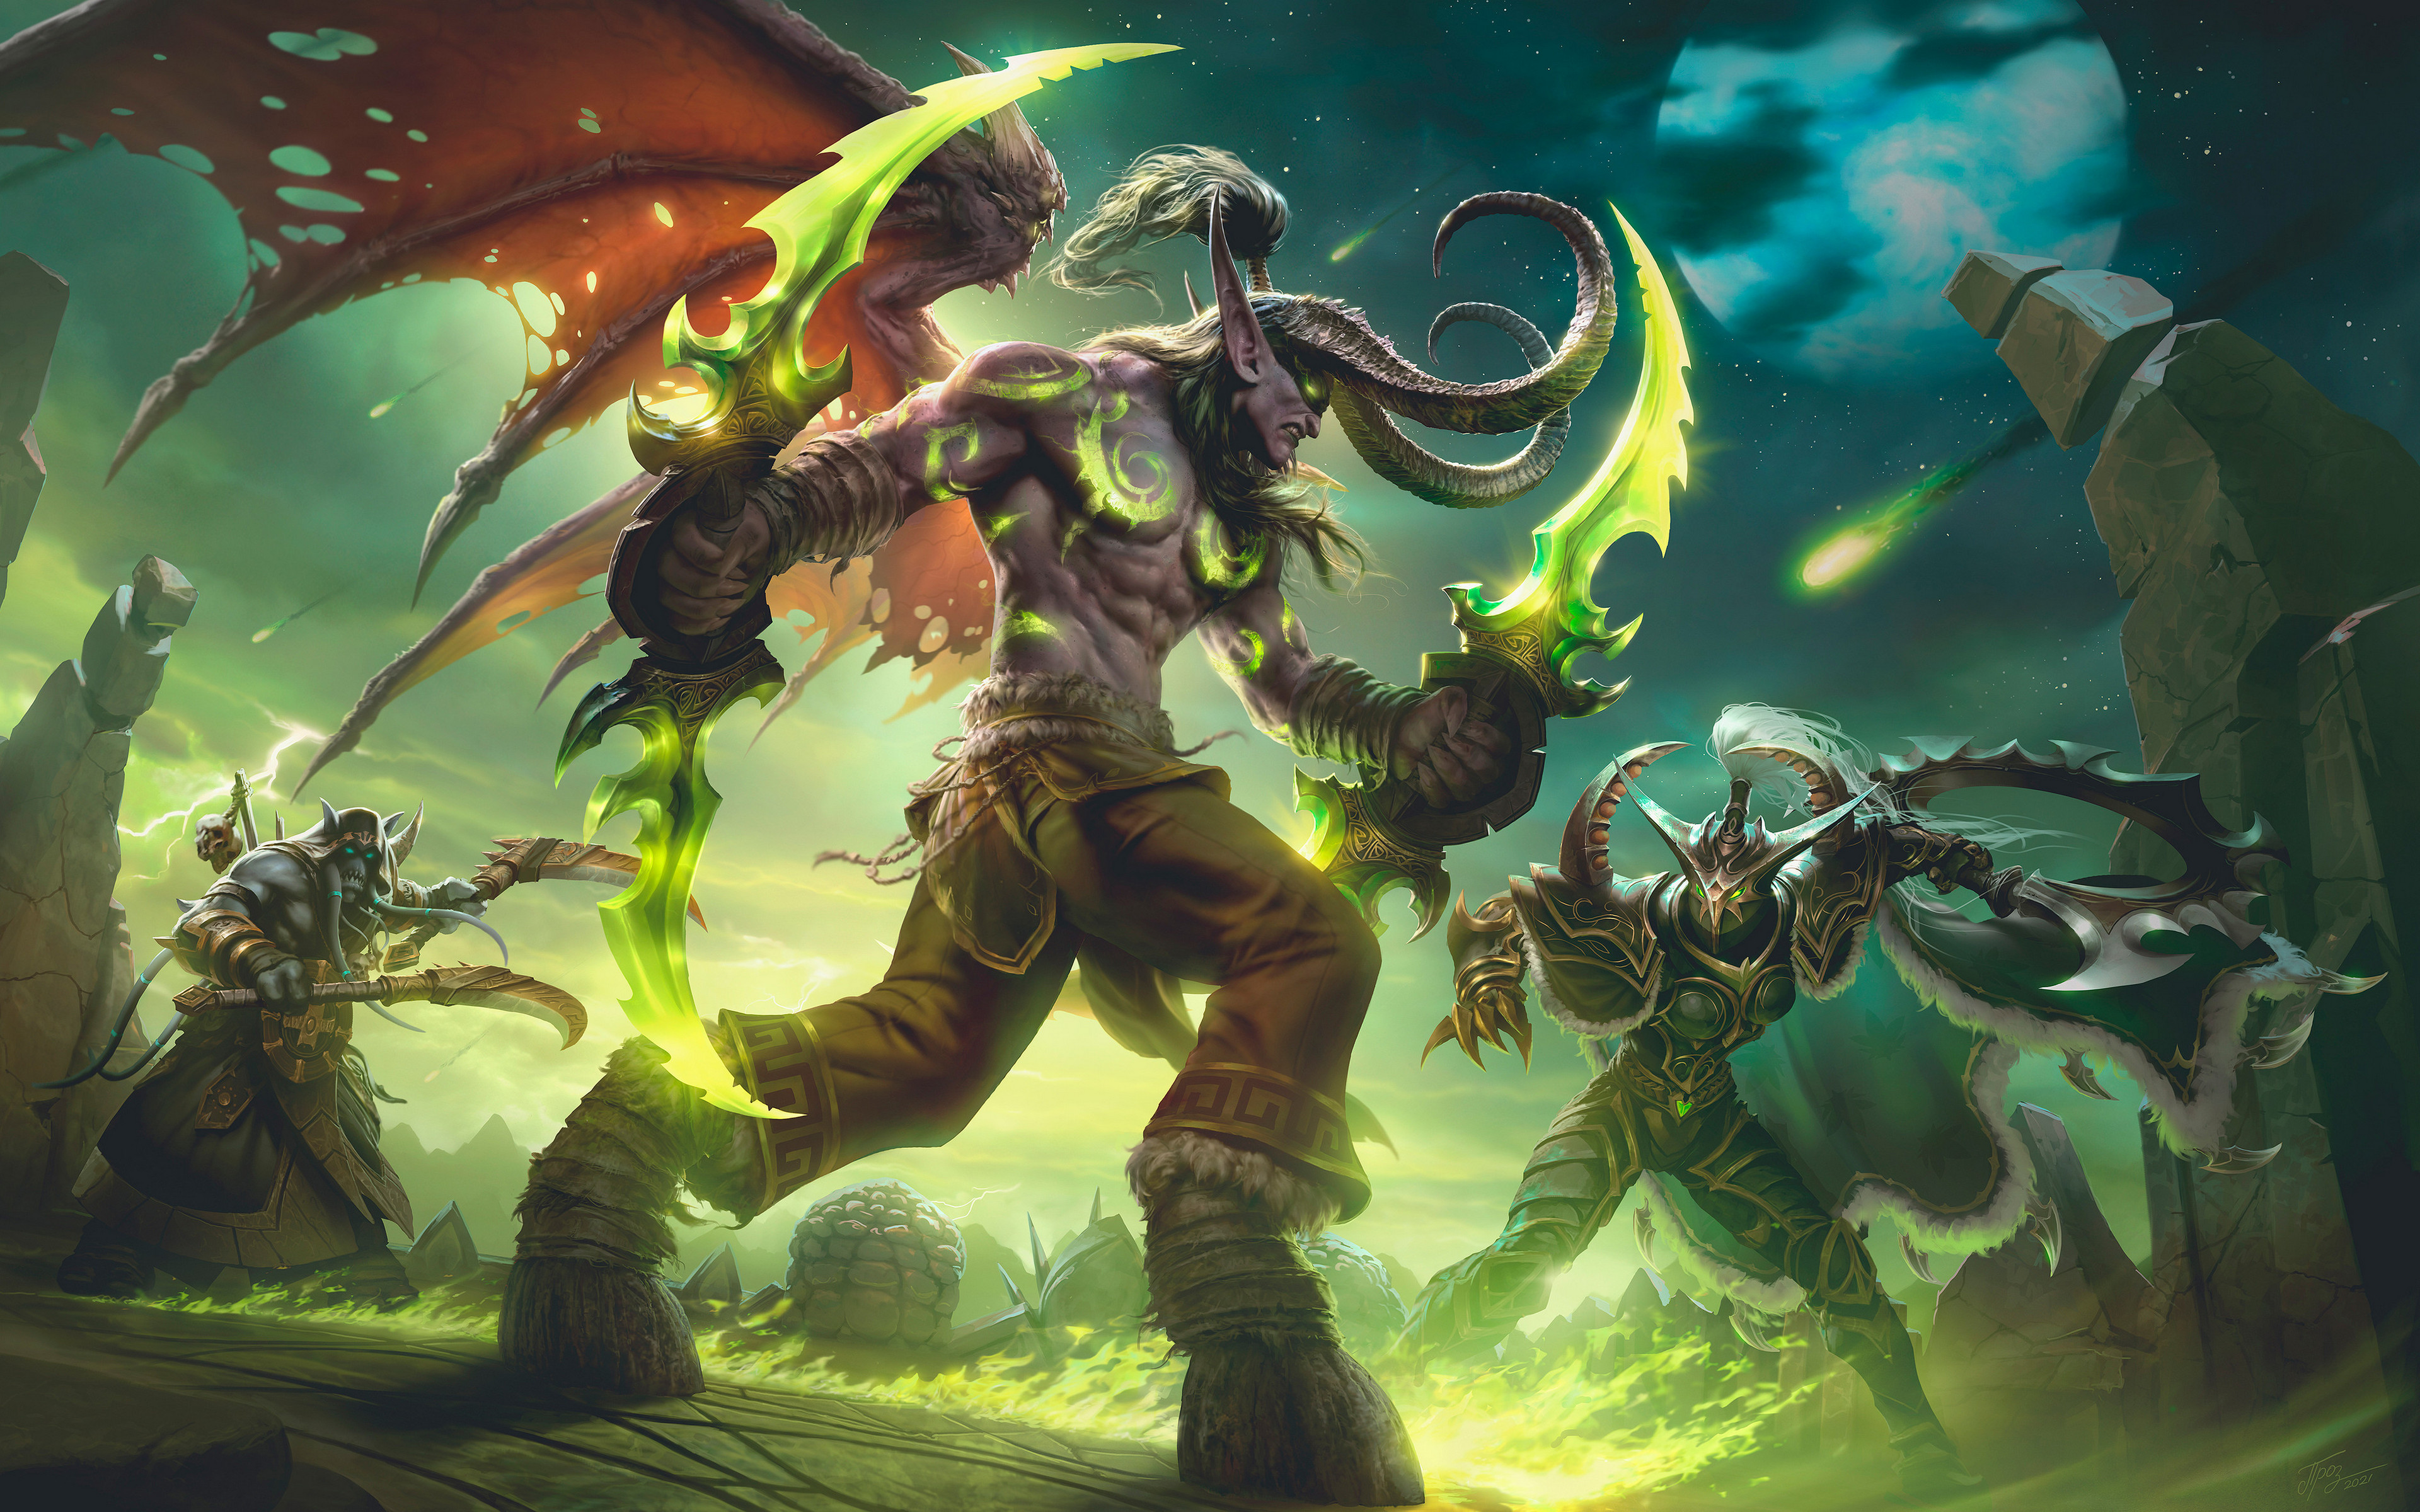 World Of Warcraft Artwork Fantasy Art Warrior Weapon Video Games Video Game Art Video Game Character 3840x2400